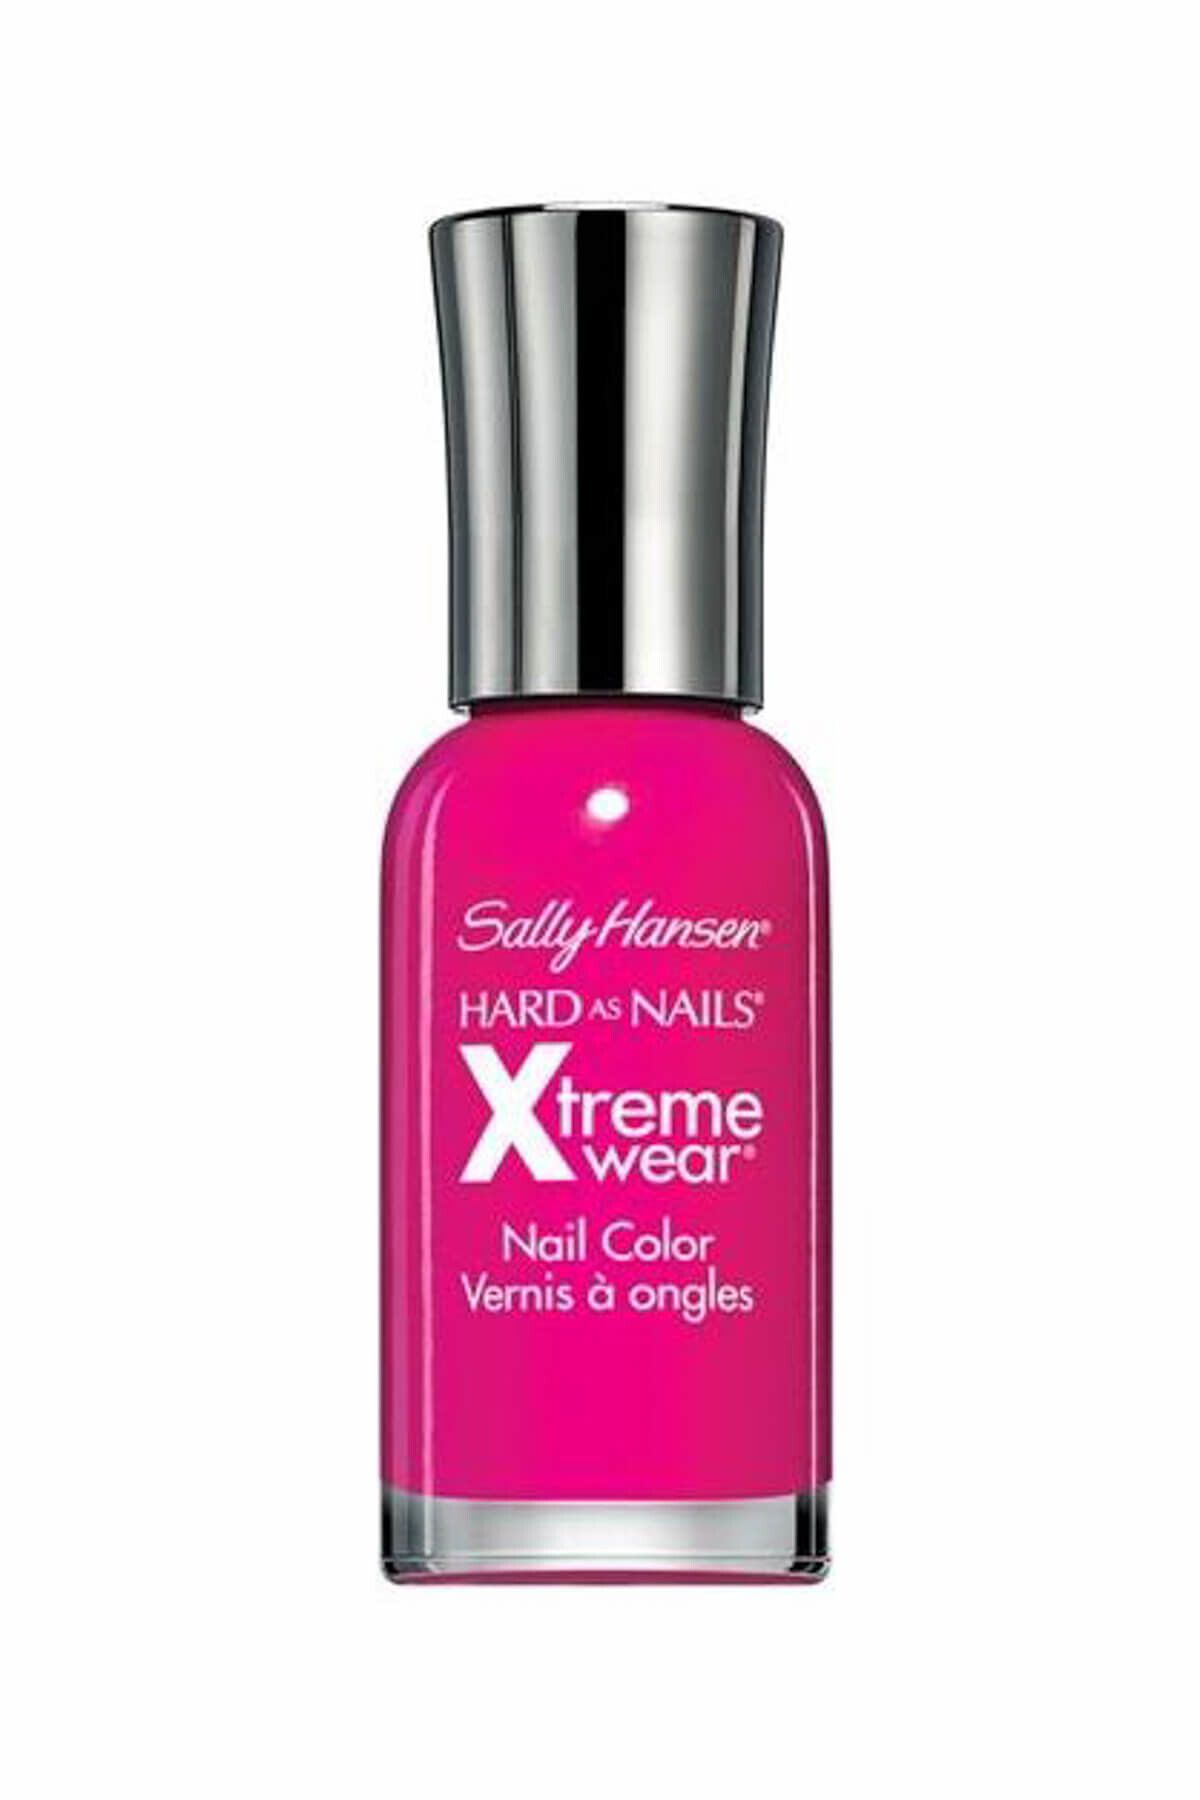 Sally Hansen Oje - Xtreme Wear Nail Color Fuşya 074170346480